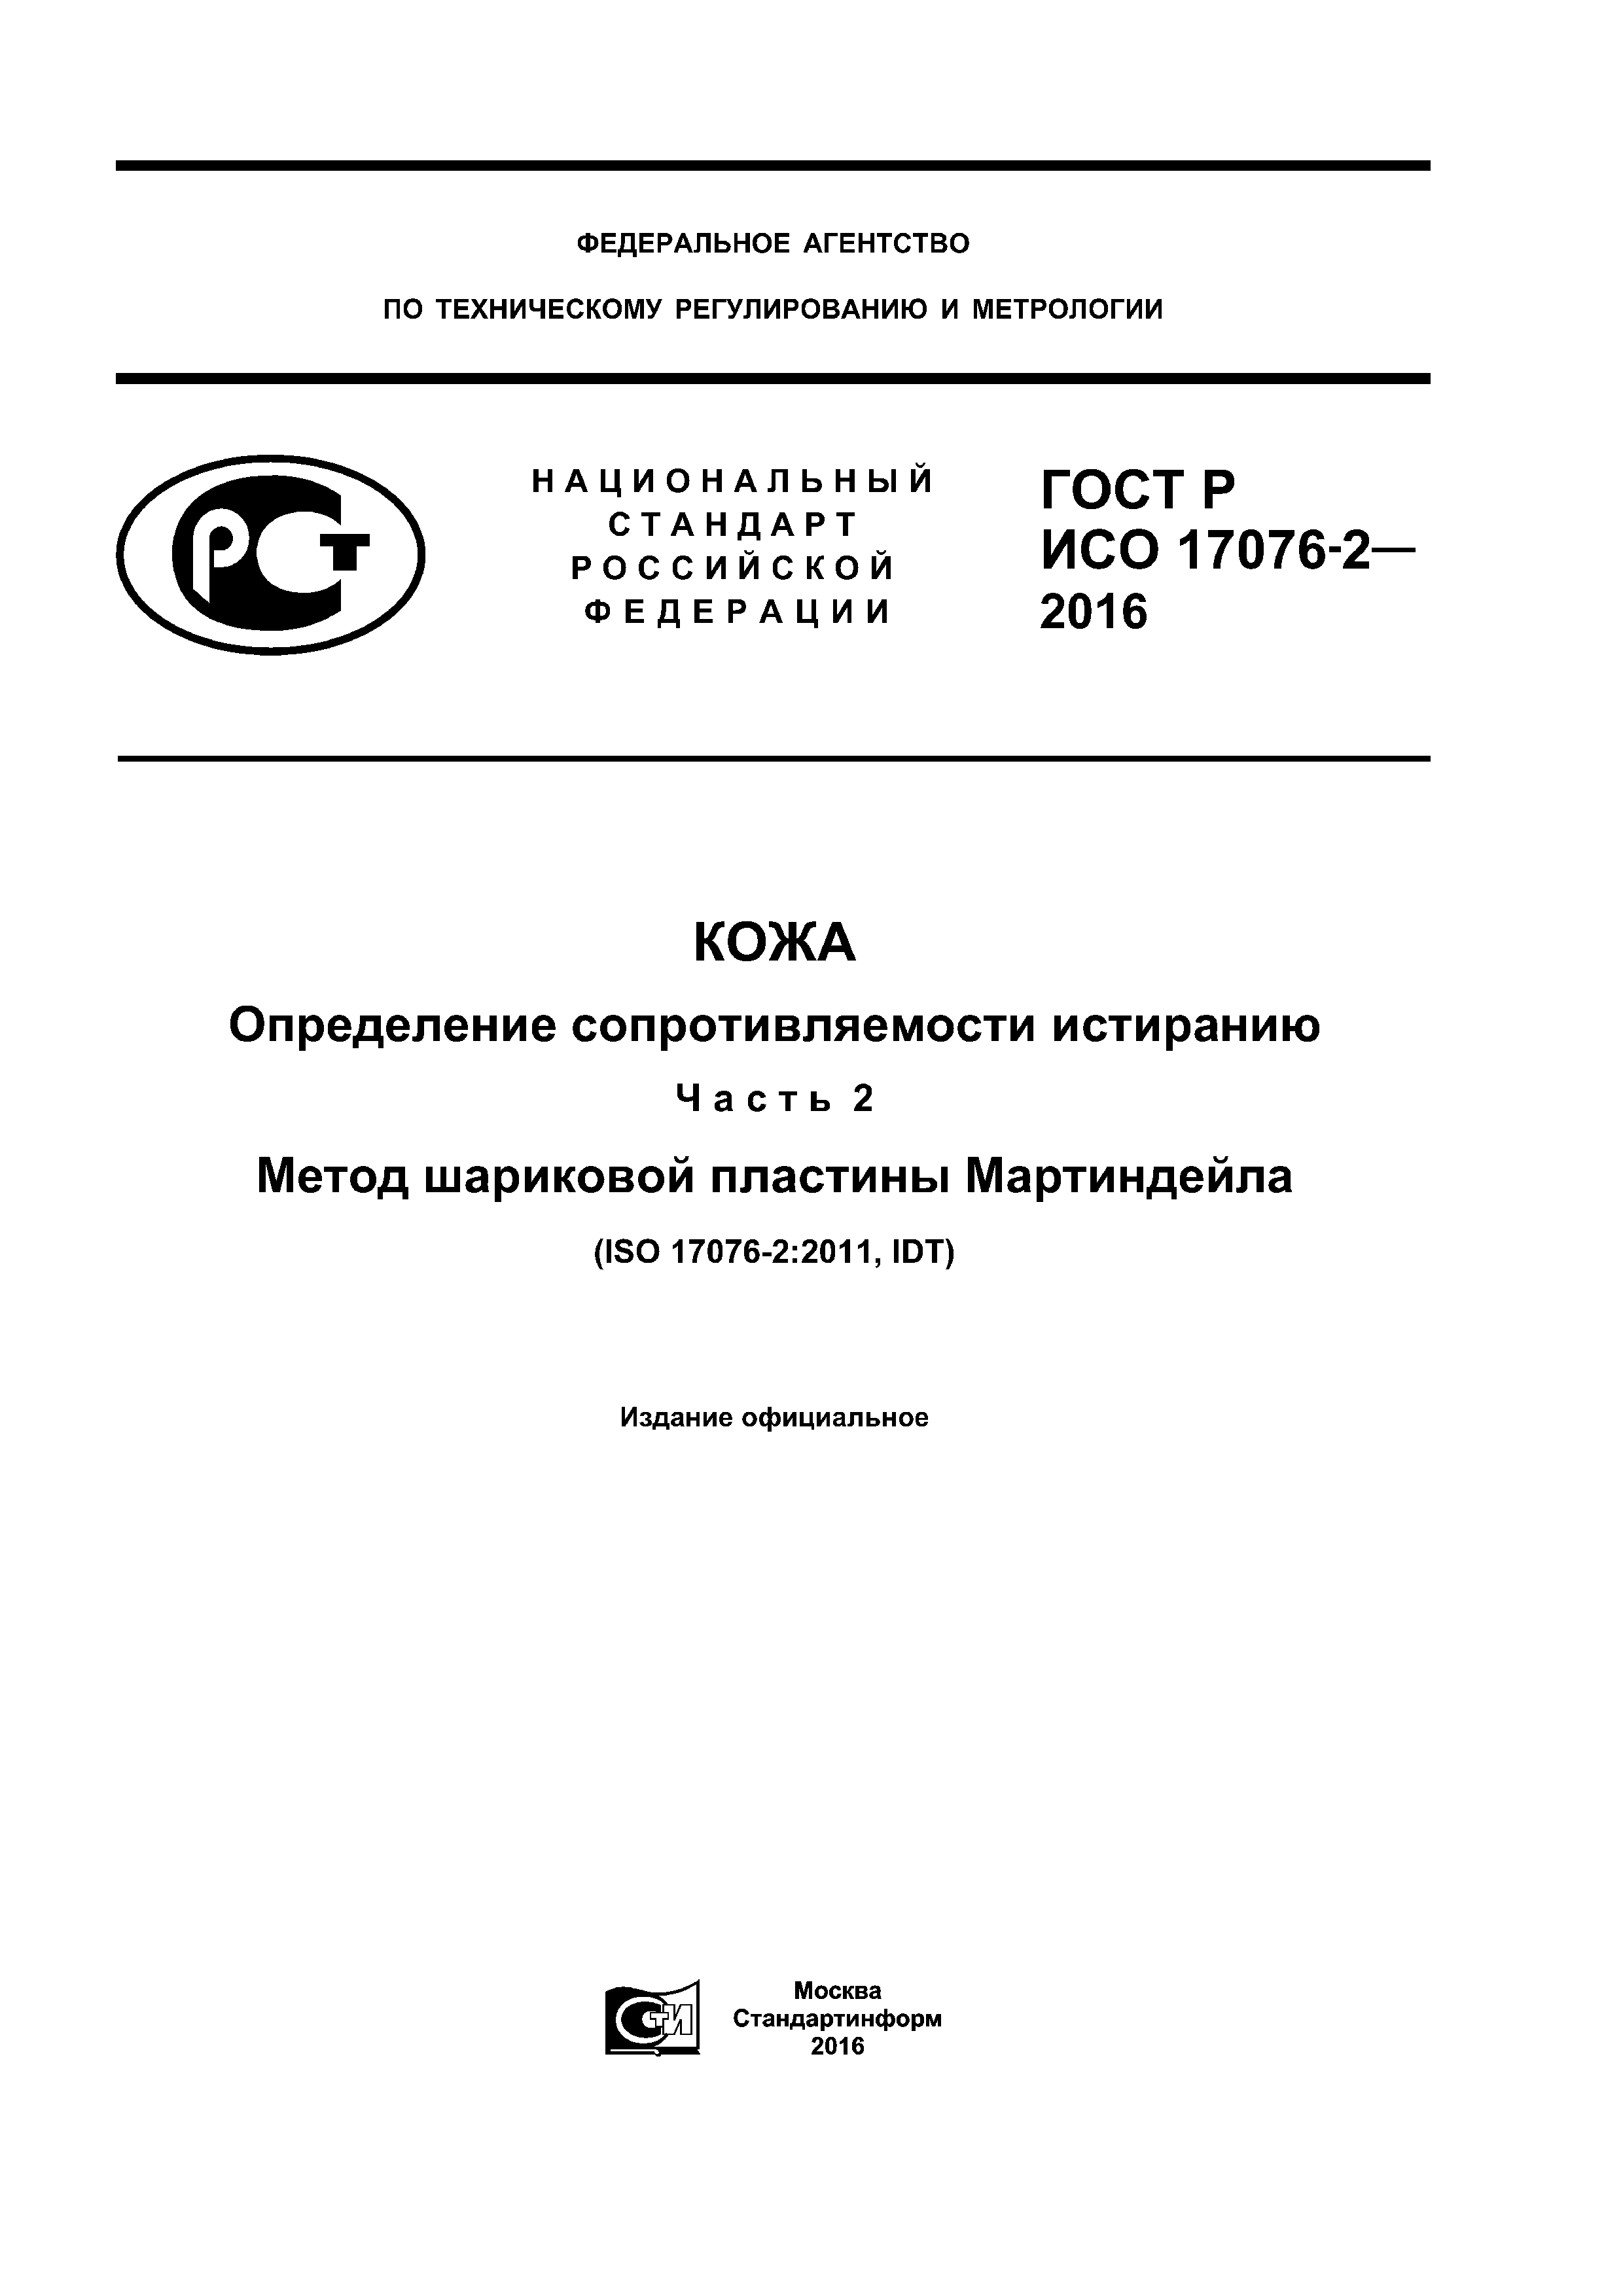 ГОСТ Р ИСО 17076-2-2016